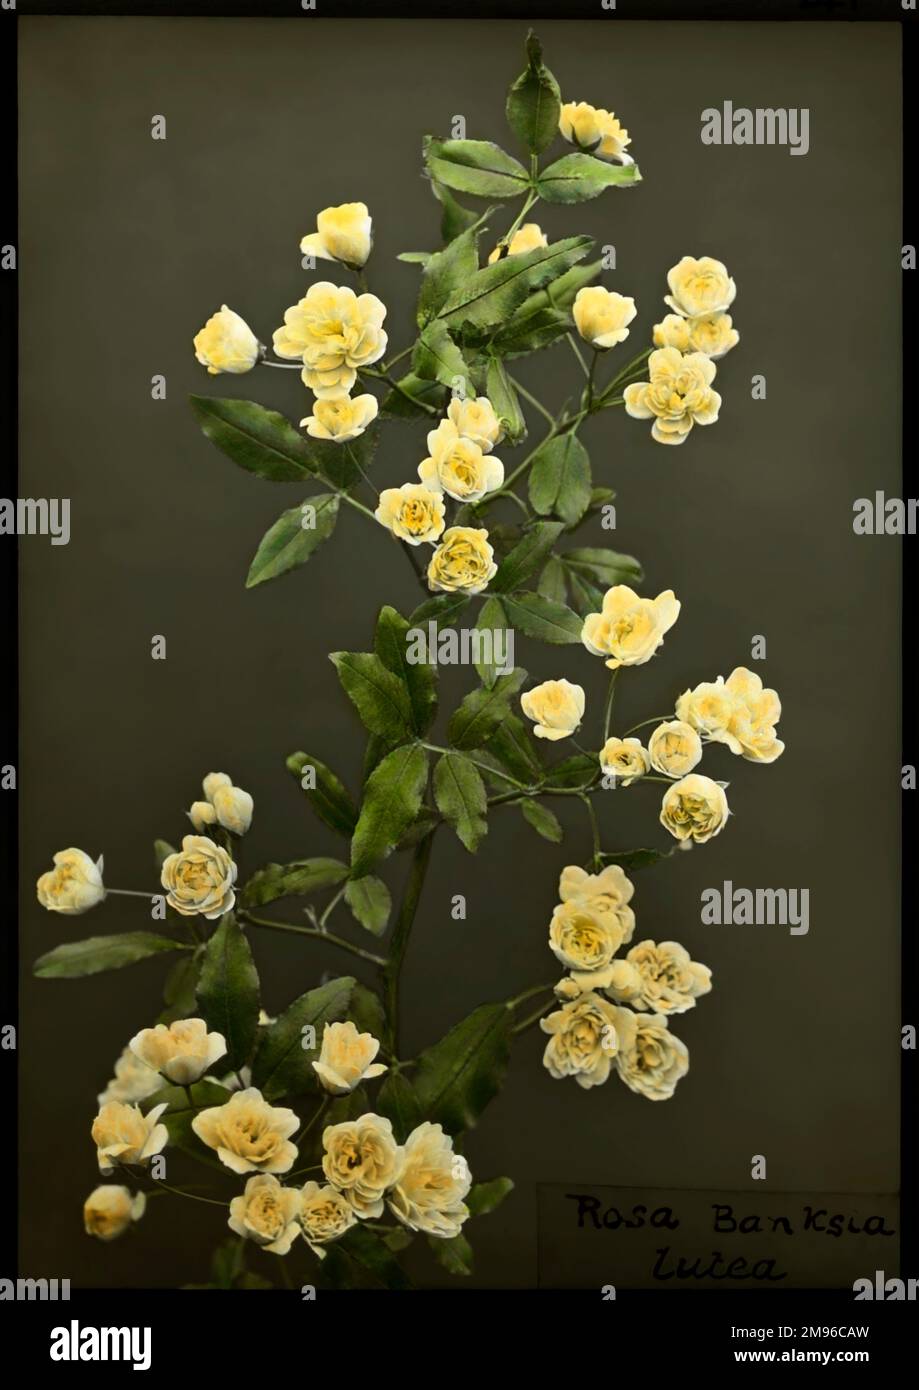 Rosa Banksiae Lutea, della famiglia Rosaceae, originaria della Cina. Ha fiori bianchi o gialli pallidi. Lady Banks, da cui prende il nome questa rosa, era la moglie del botanico Sir Joseph Banks. Foto Stock